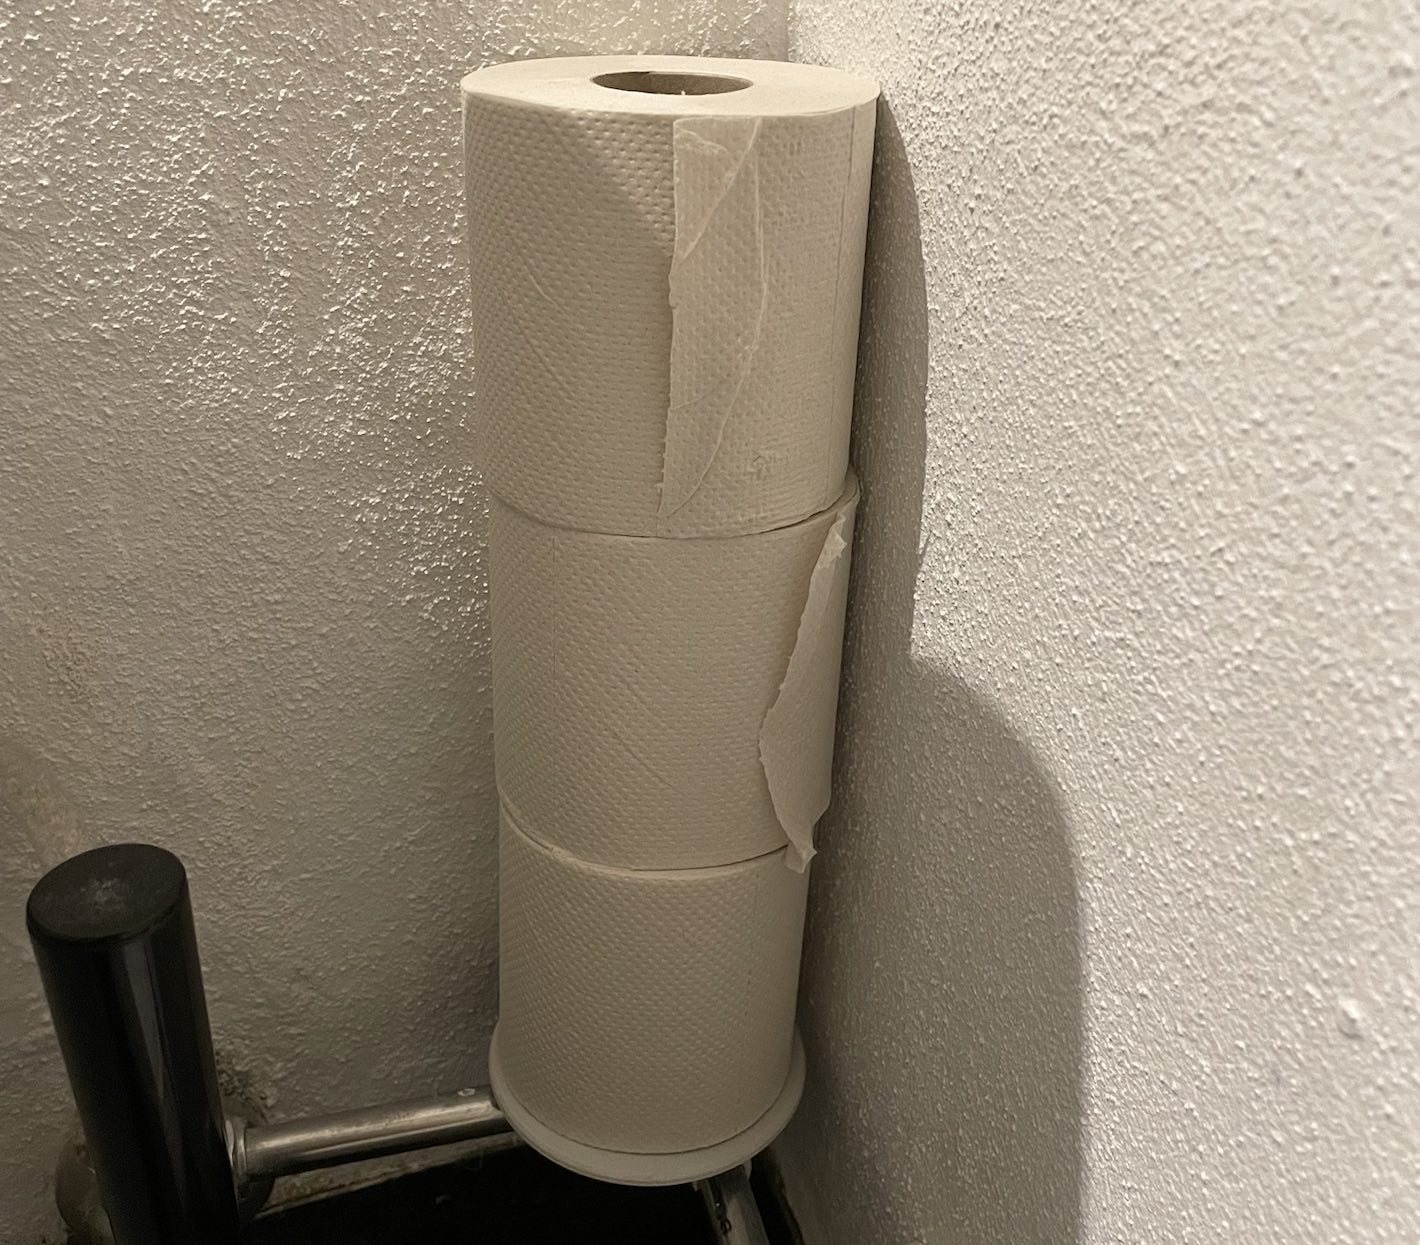 Shelf for toilet paper